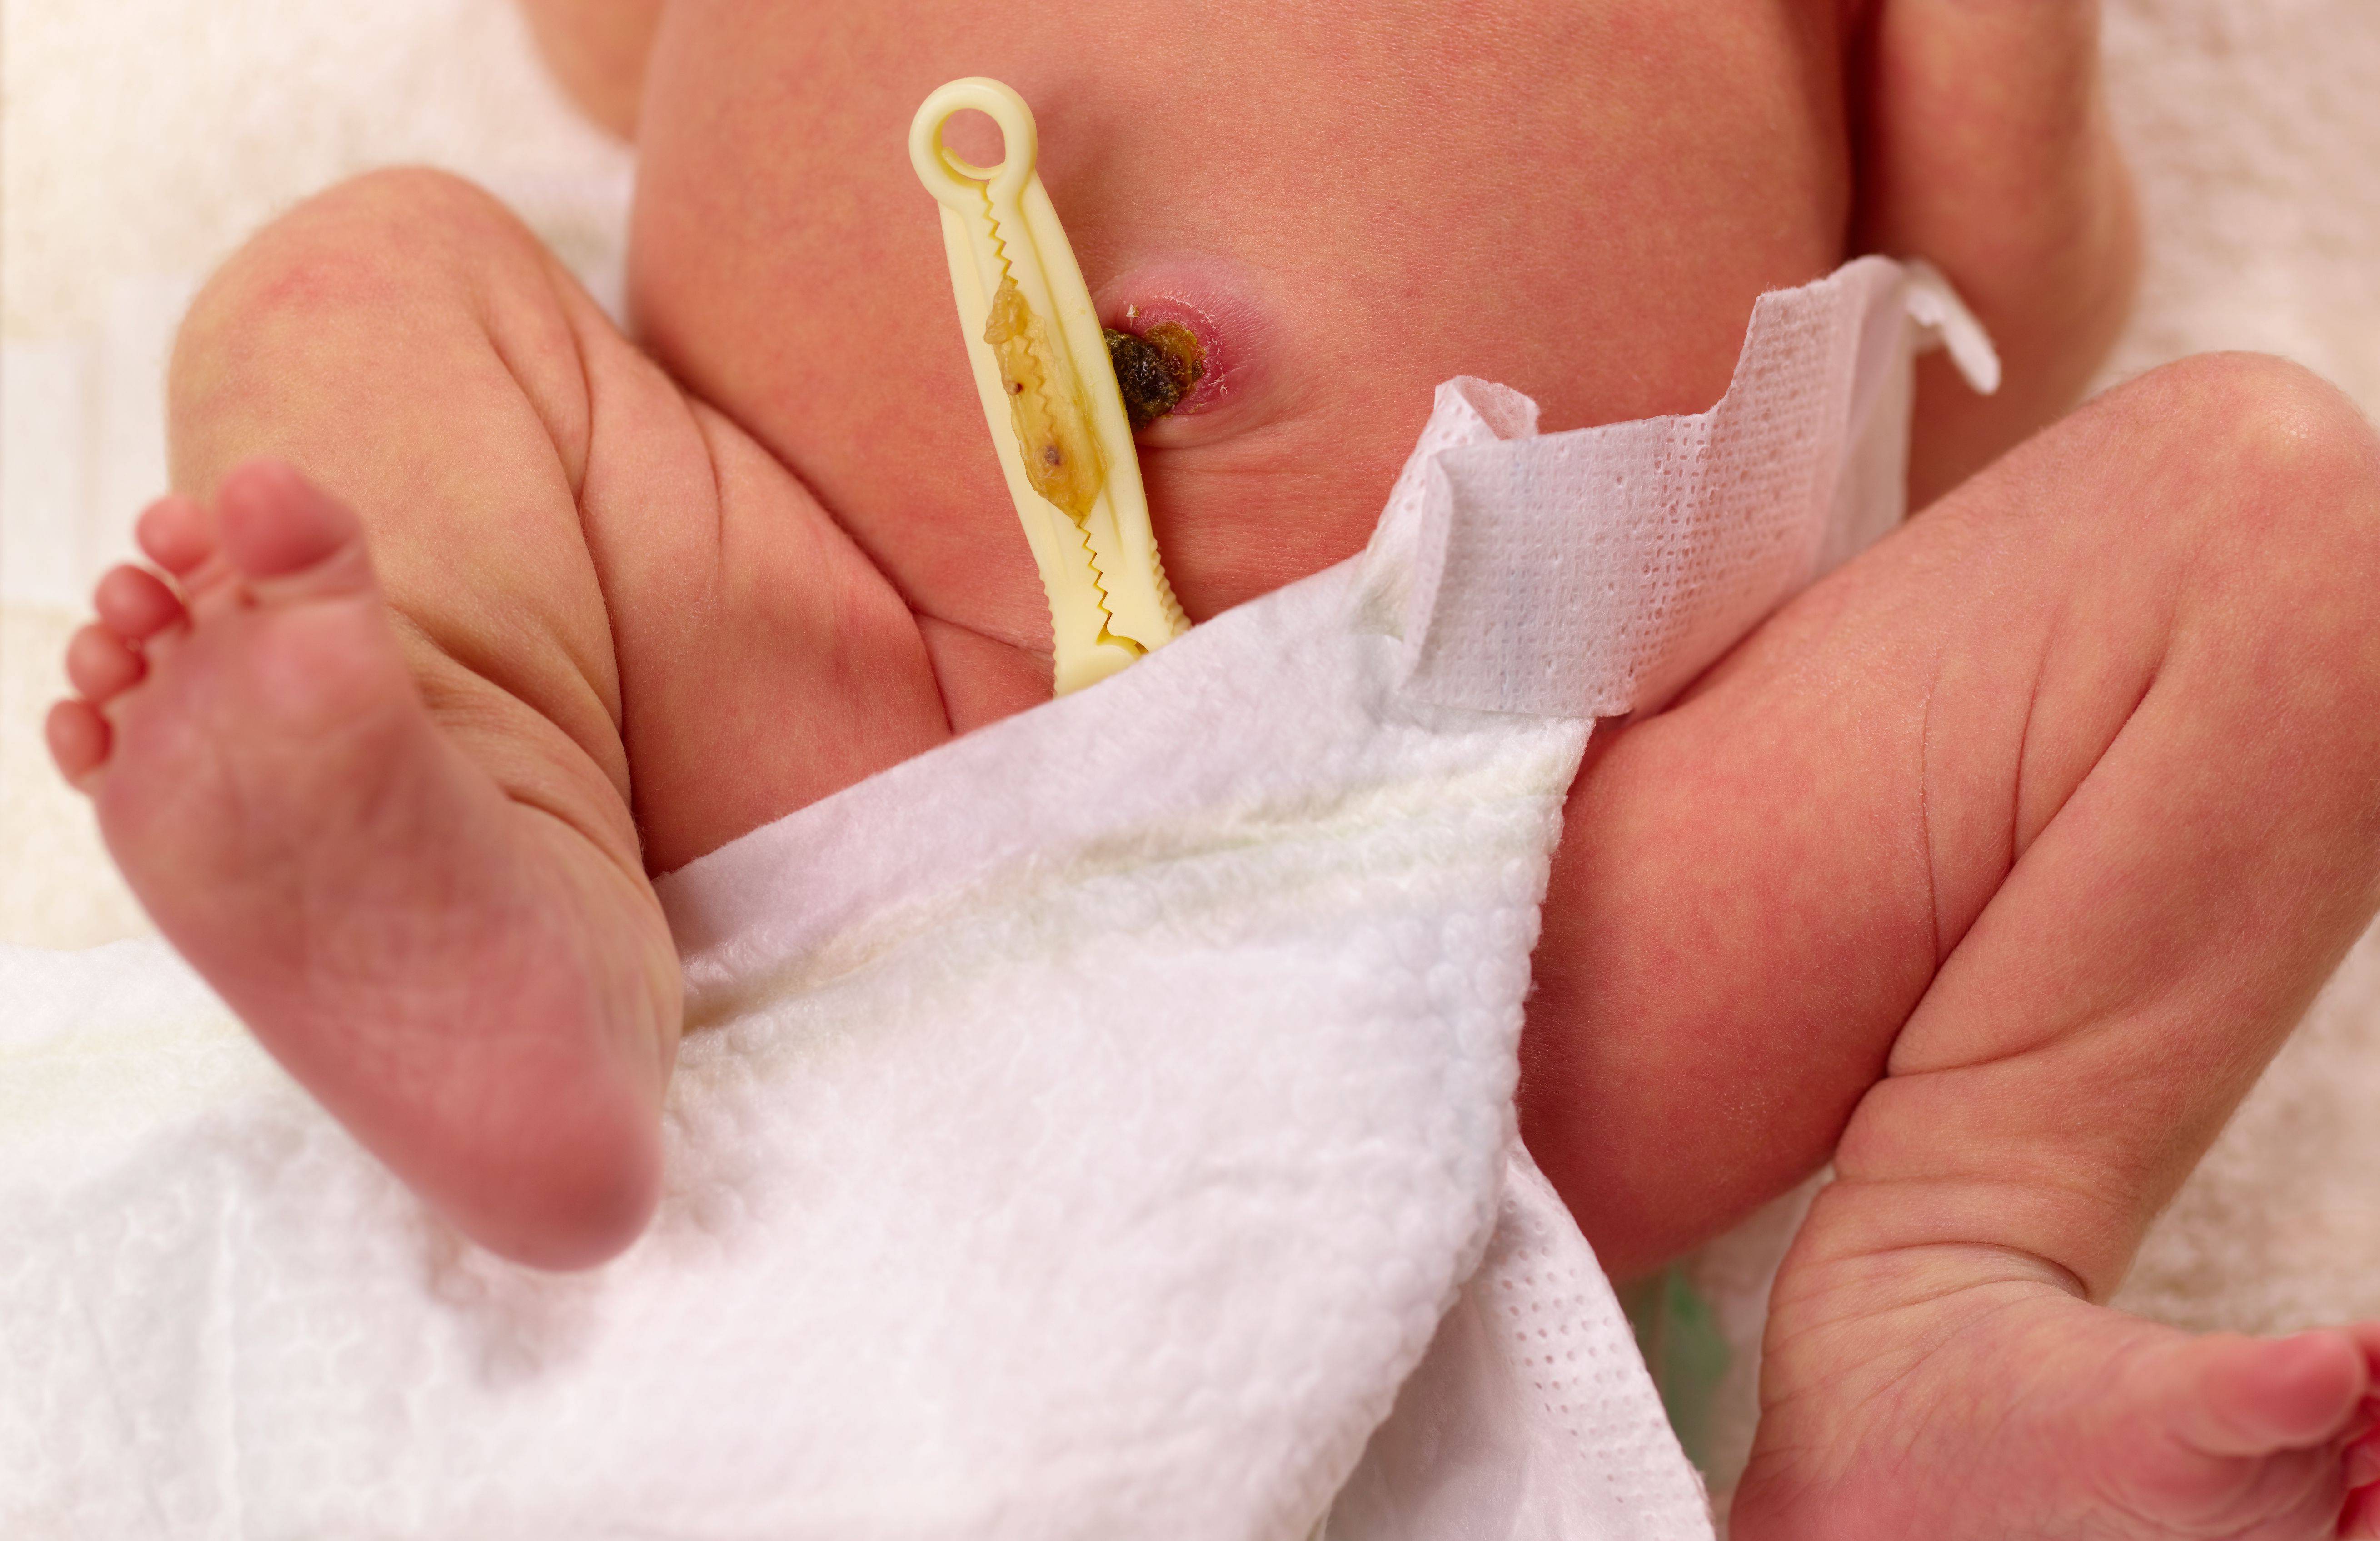 Обработка пупочной ранки у новорожденного ребенка в домашних условиях: алгоритм действий